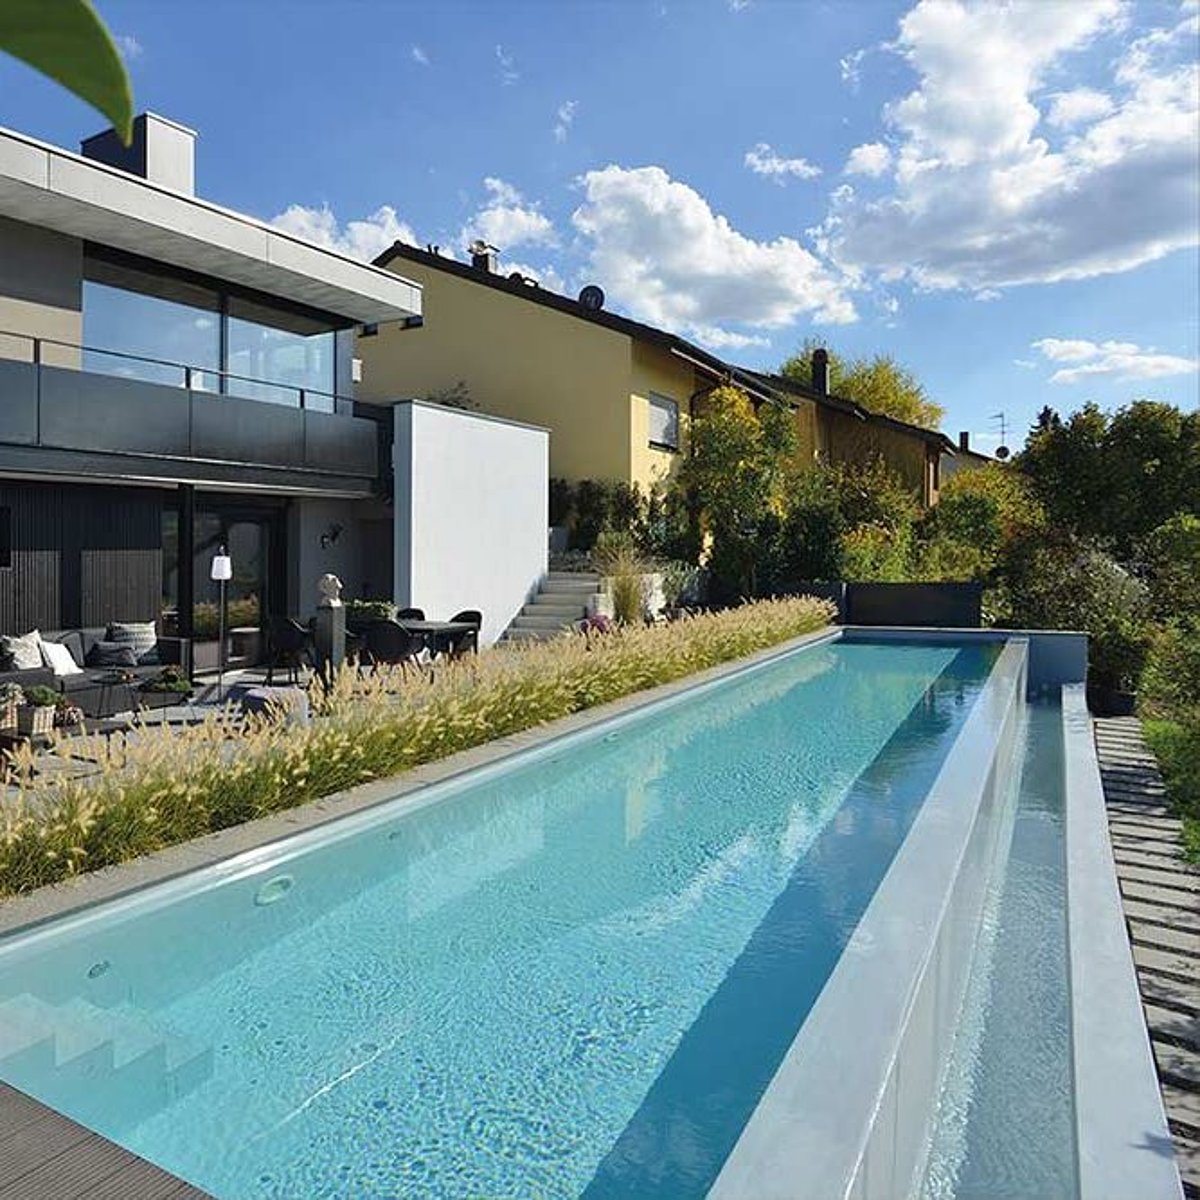 Een smal lang zwembad op een terras.